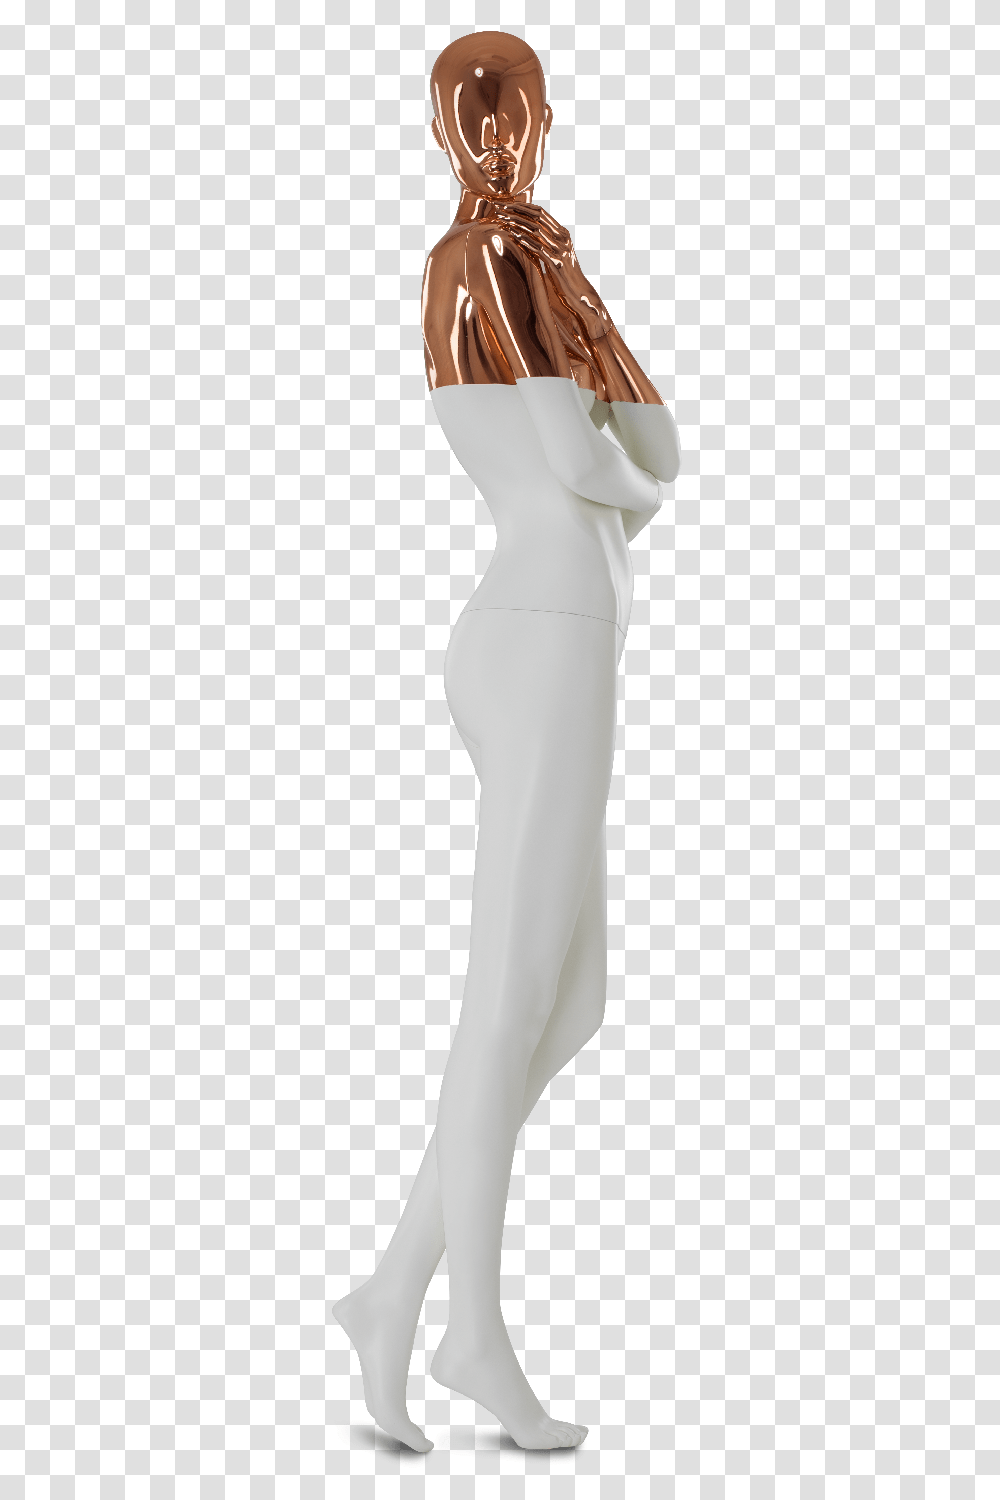 Mannequin Background, Pants, Dress, Person Transparent Png